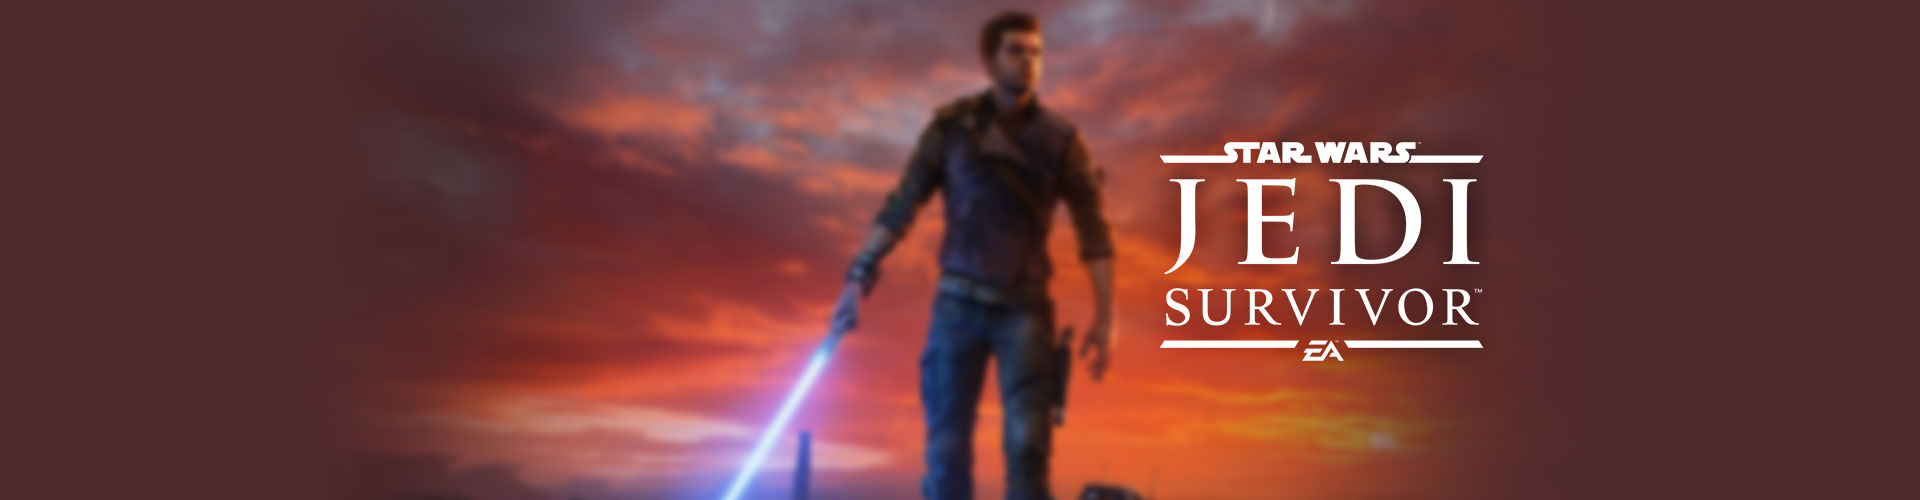 Configuration PC minimale, recommandée et 4K pour jouer à Star Wars Jedi : Survivor